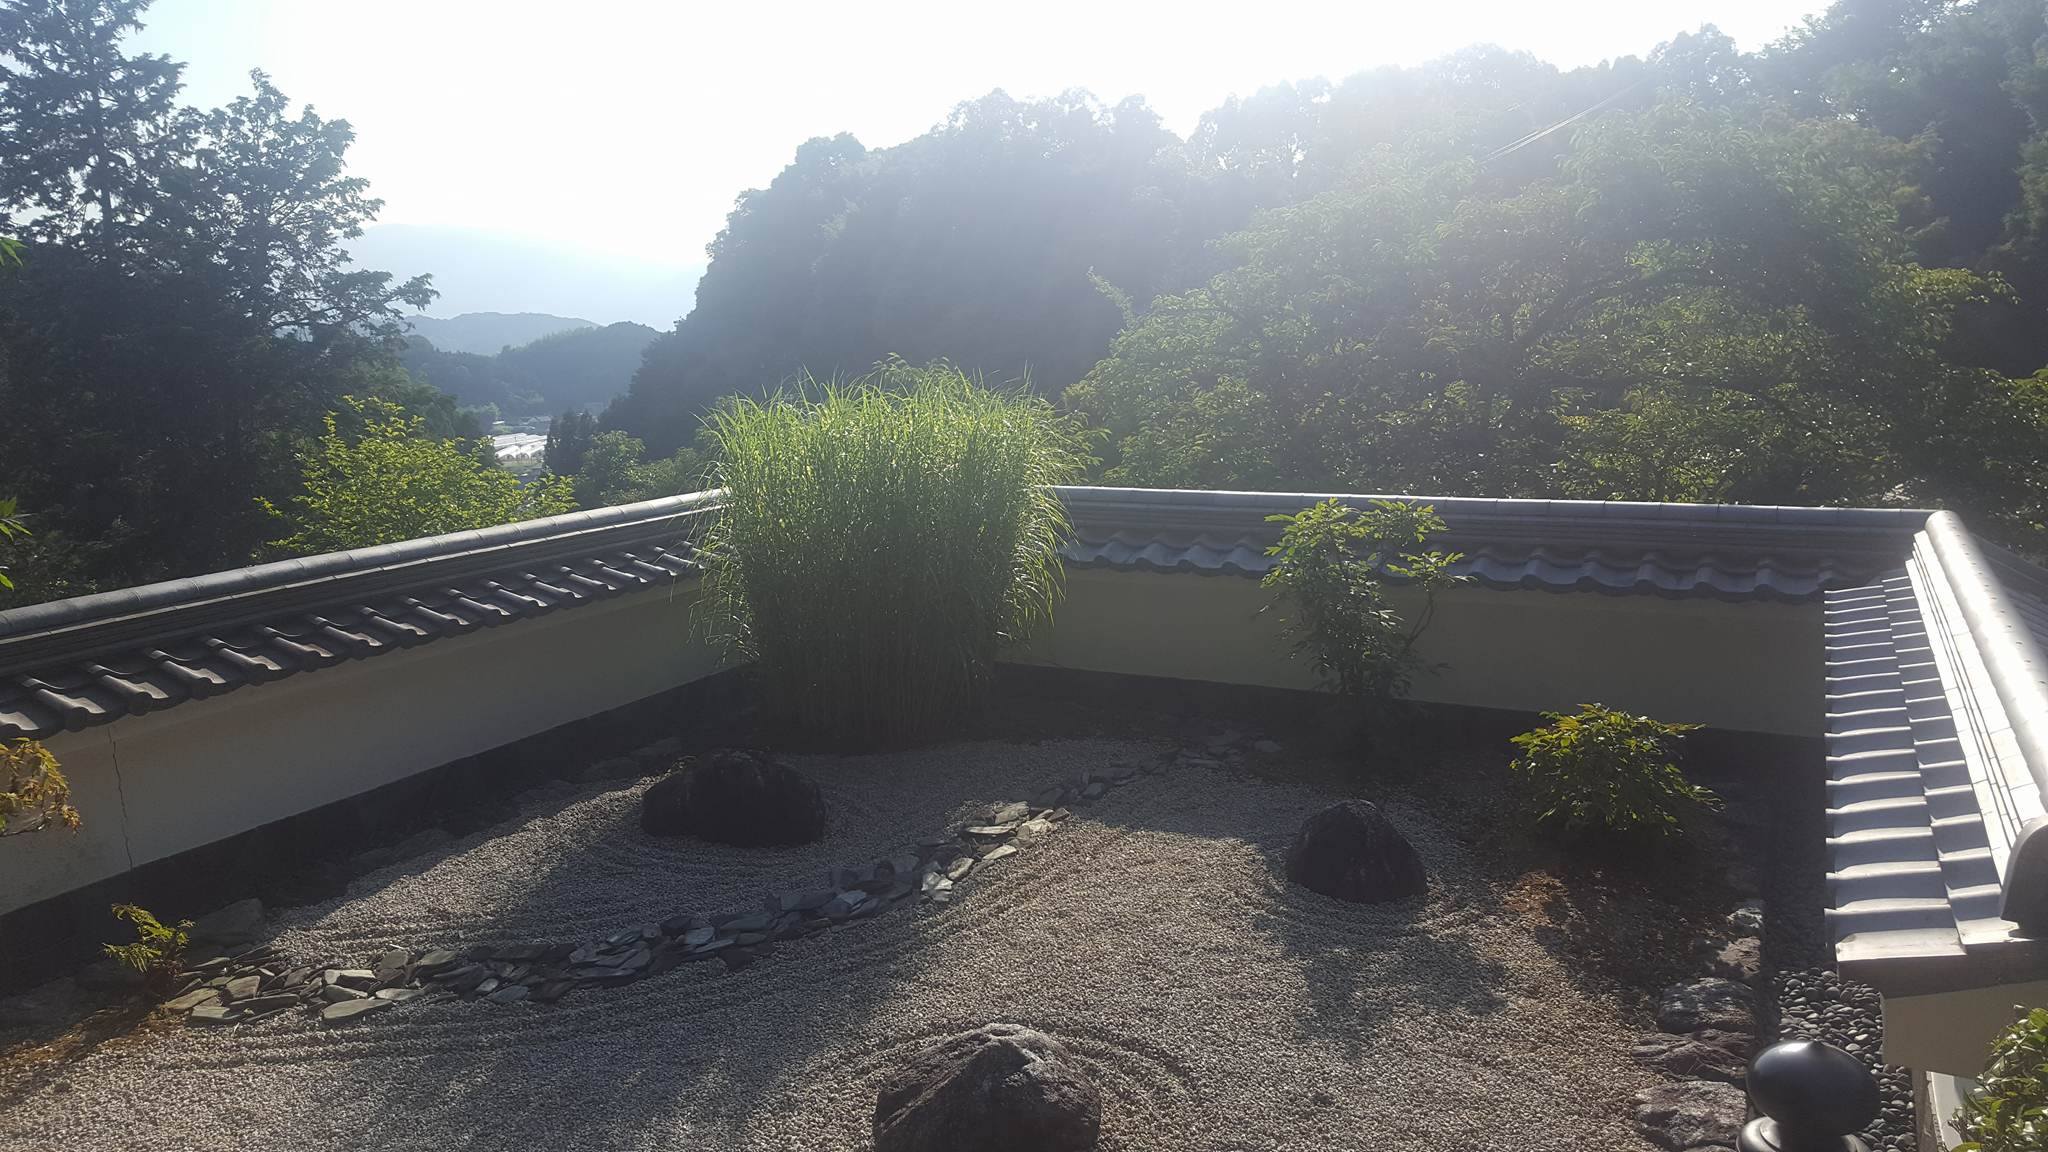 A zen garden at the top of Oka-dera Temple